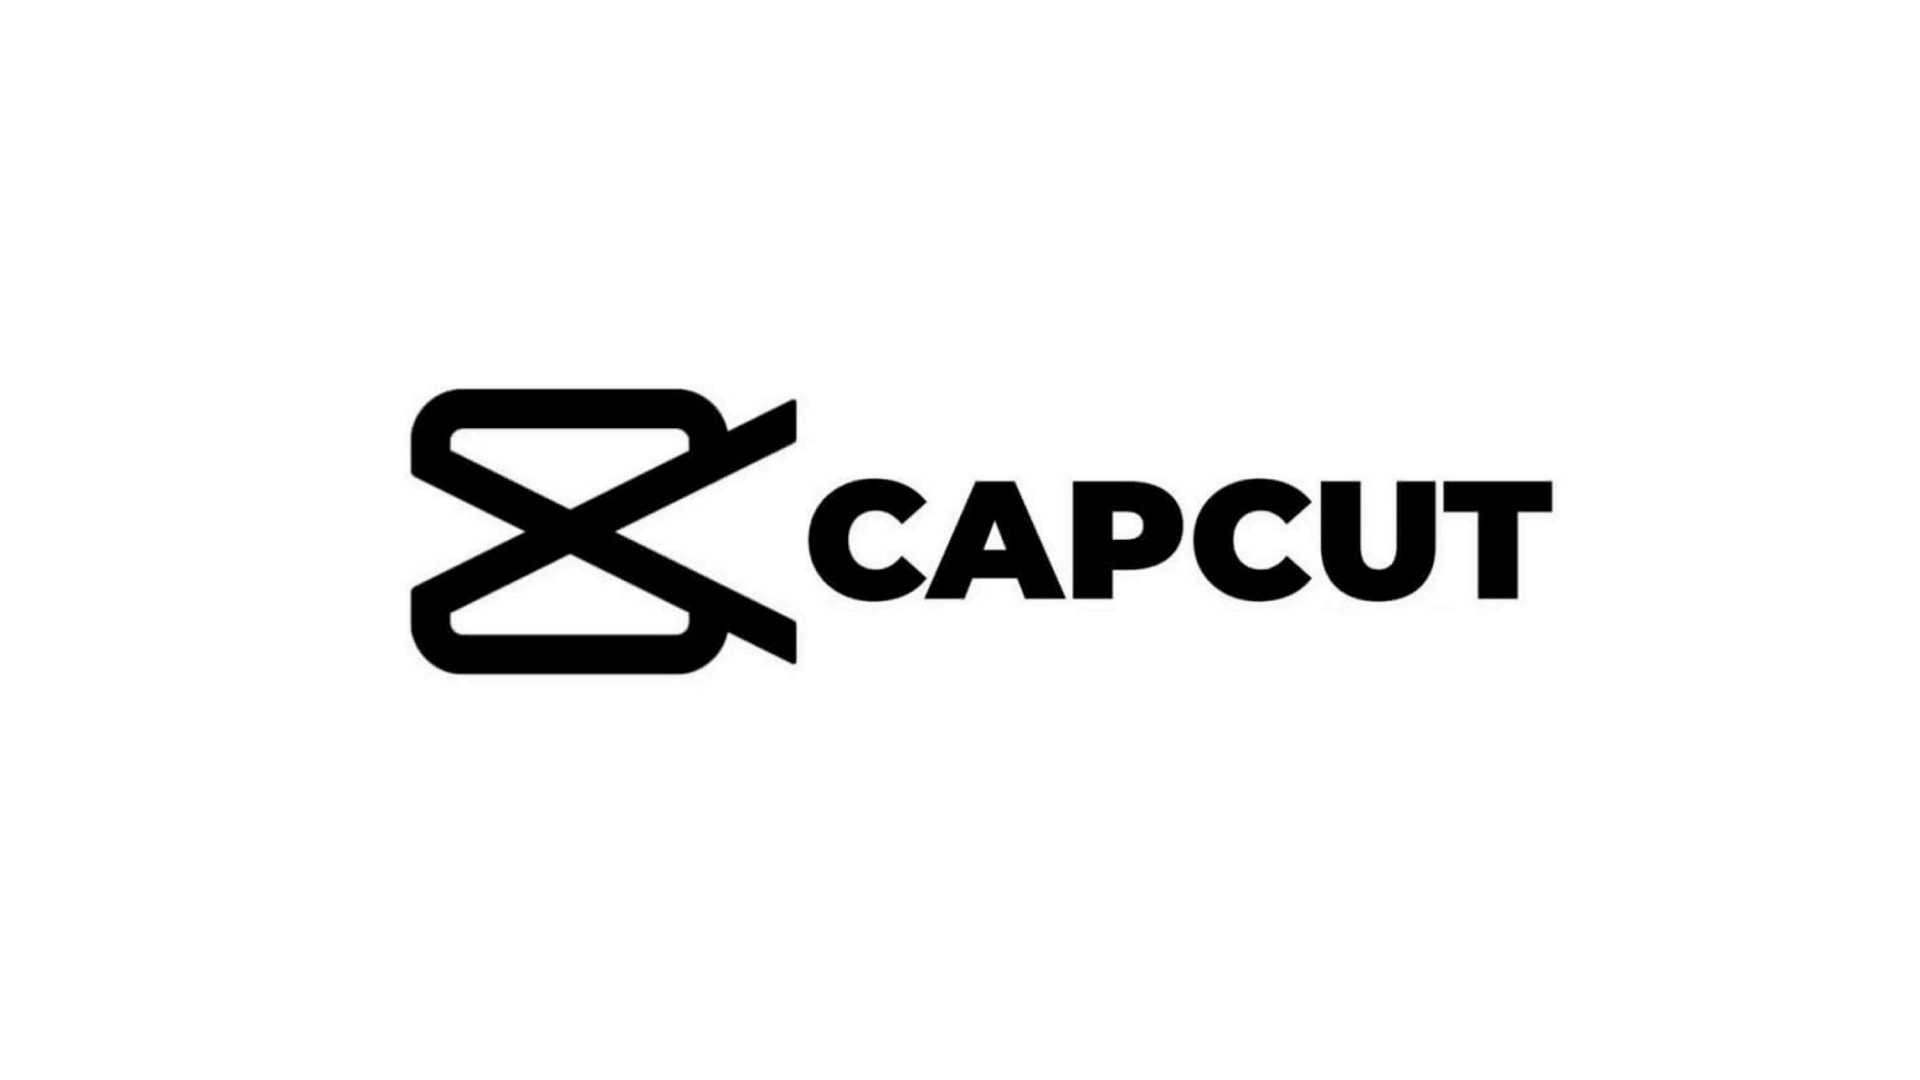 CAPCUT. CAPCUT лого. Значле CAPCUT. Картинки для CAPCUT.